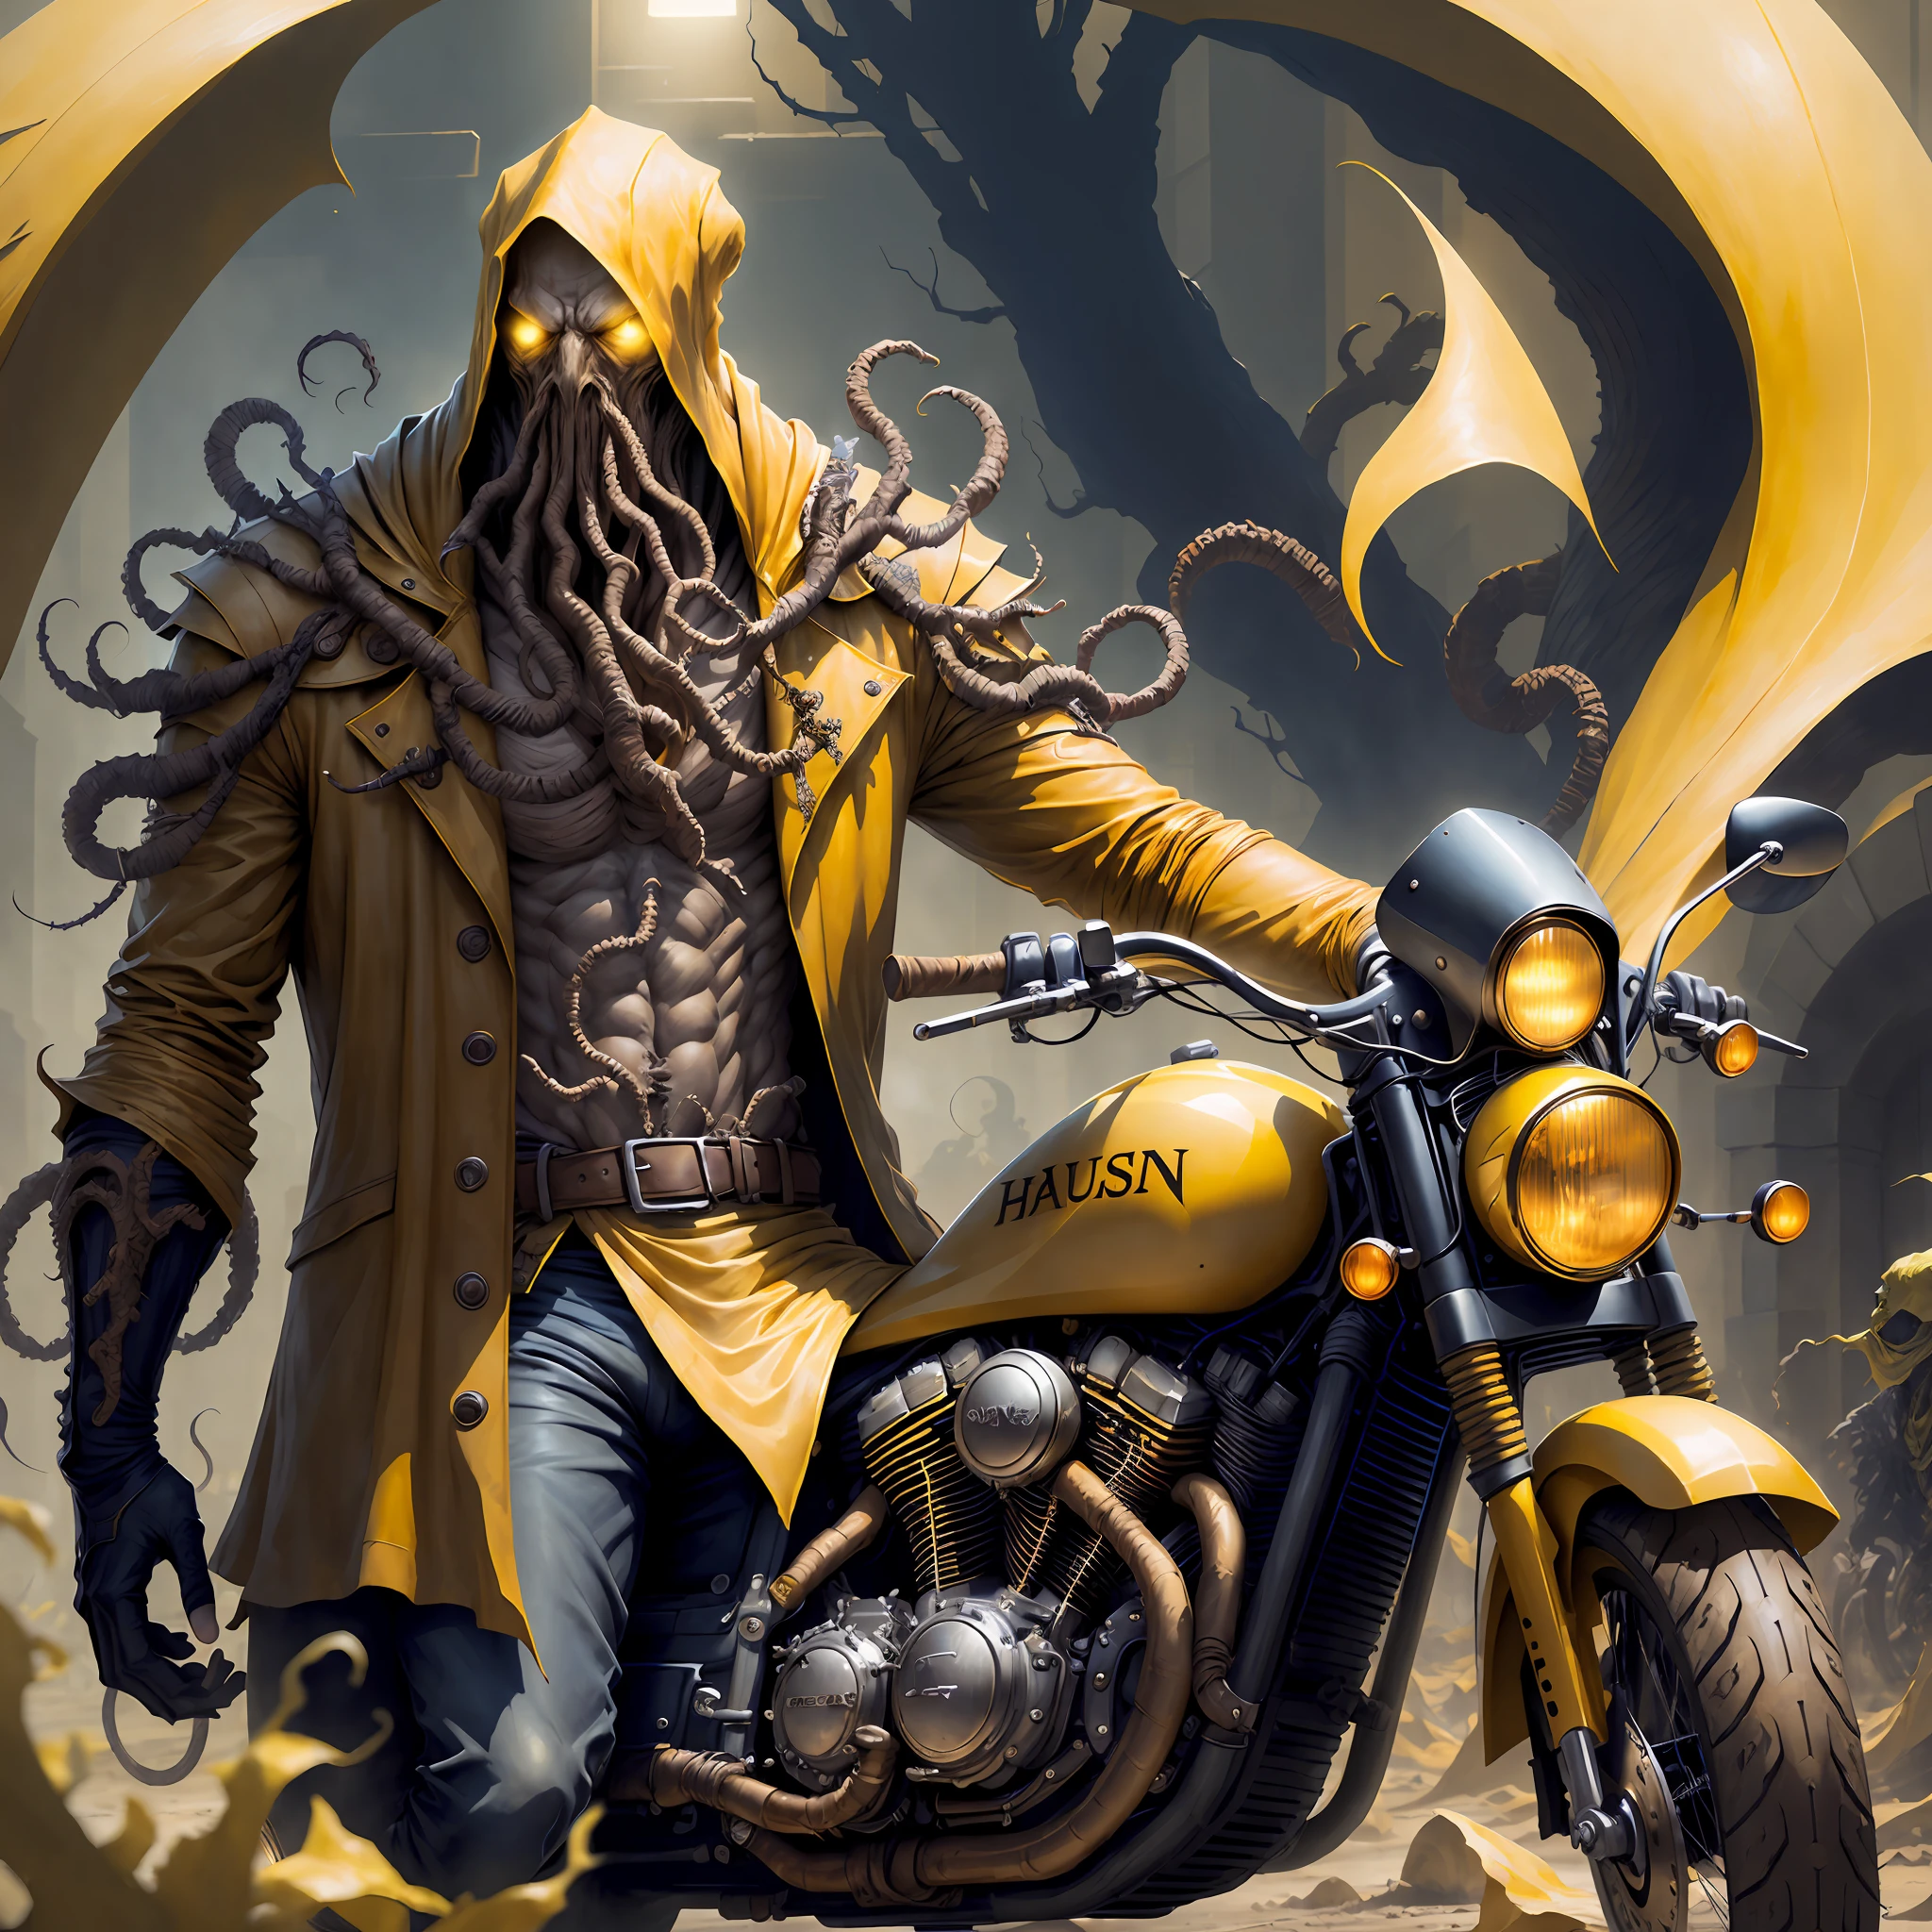 "Hastur, rei de amarelo andando de moto"